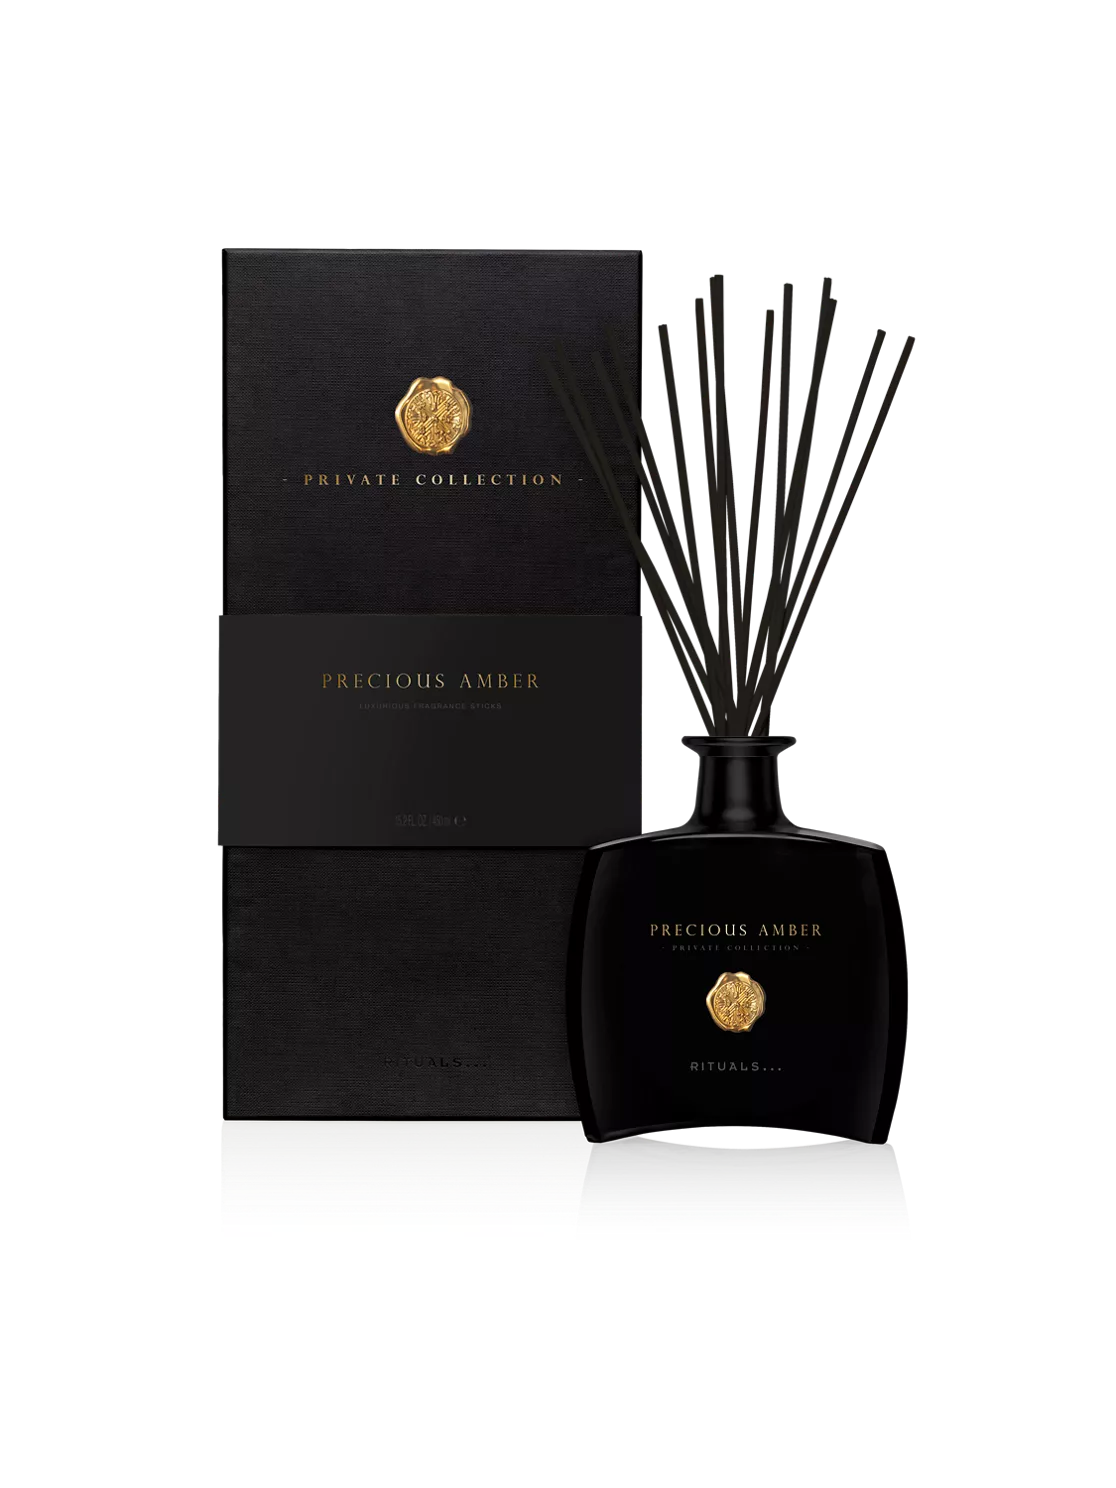 RITUALS PRECIOUS AMBER Mini Fragrance sticks diffuser New in Box